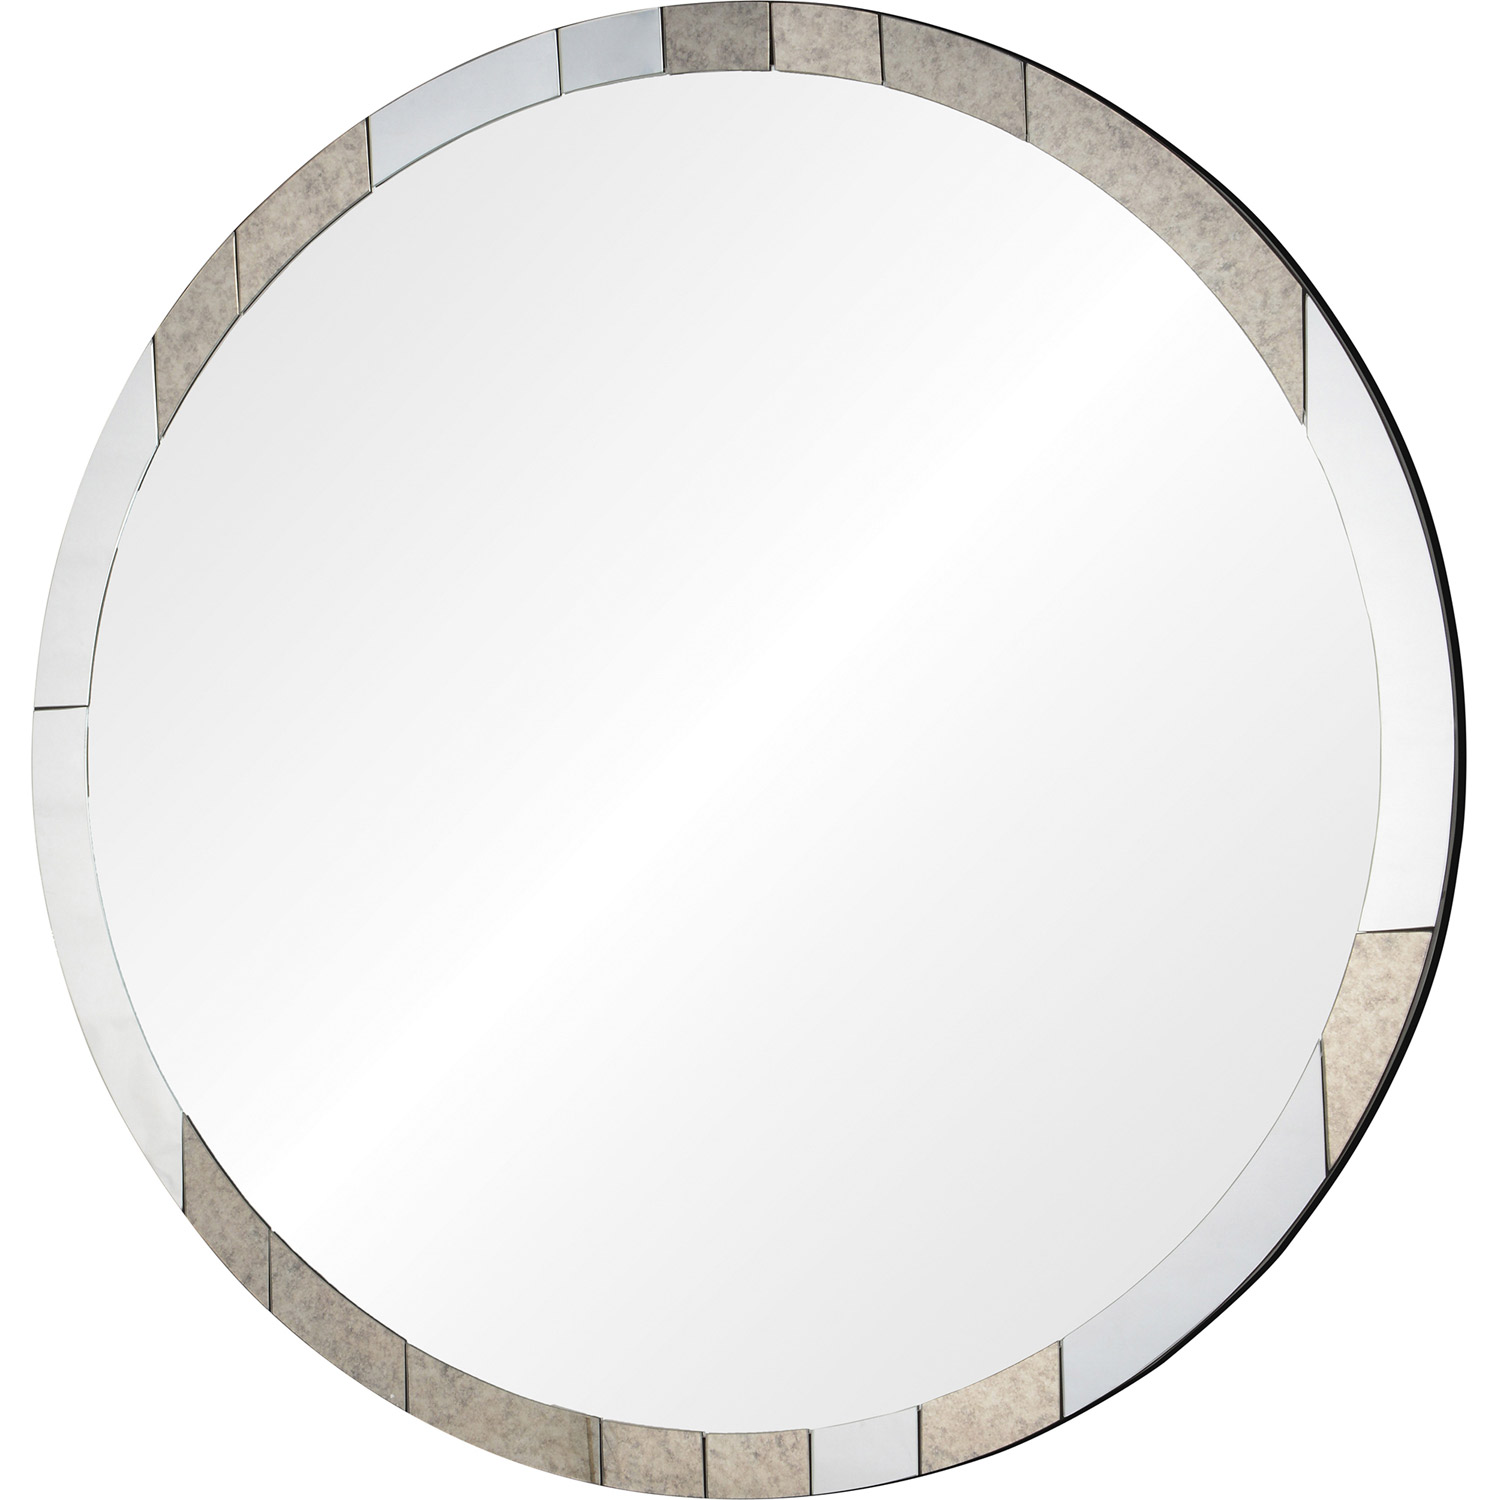 Ren-Wil Garner Round Mirror - Mirror